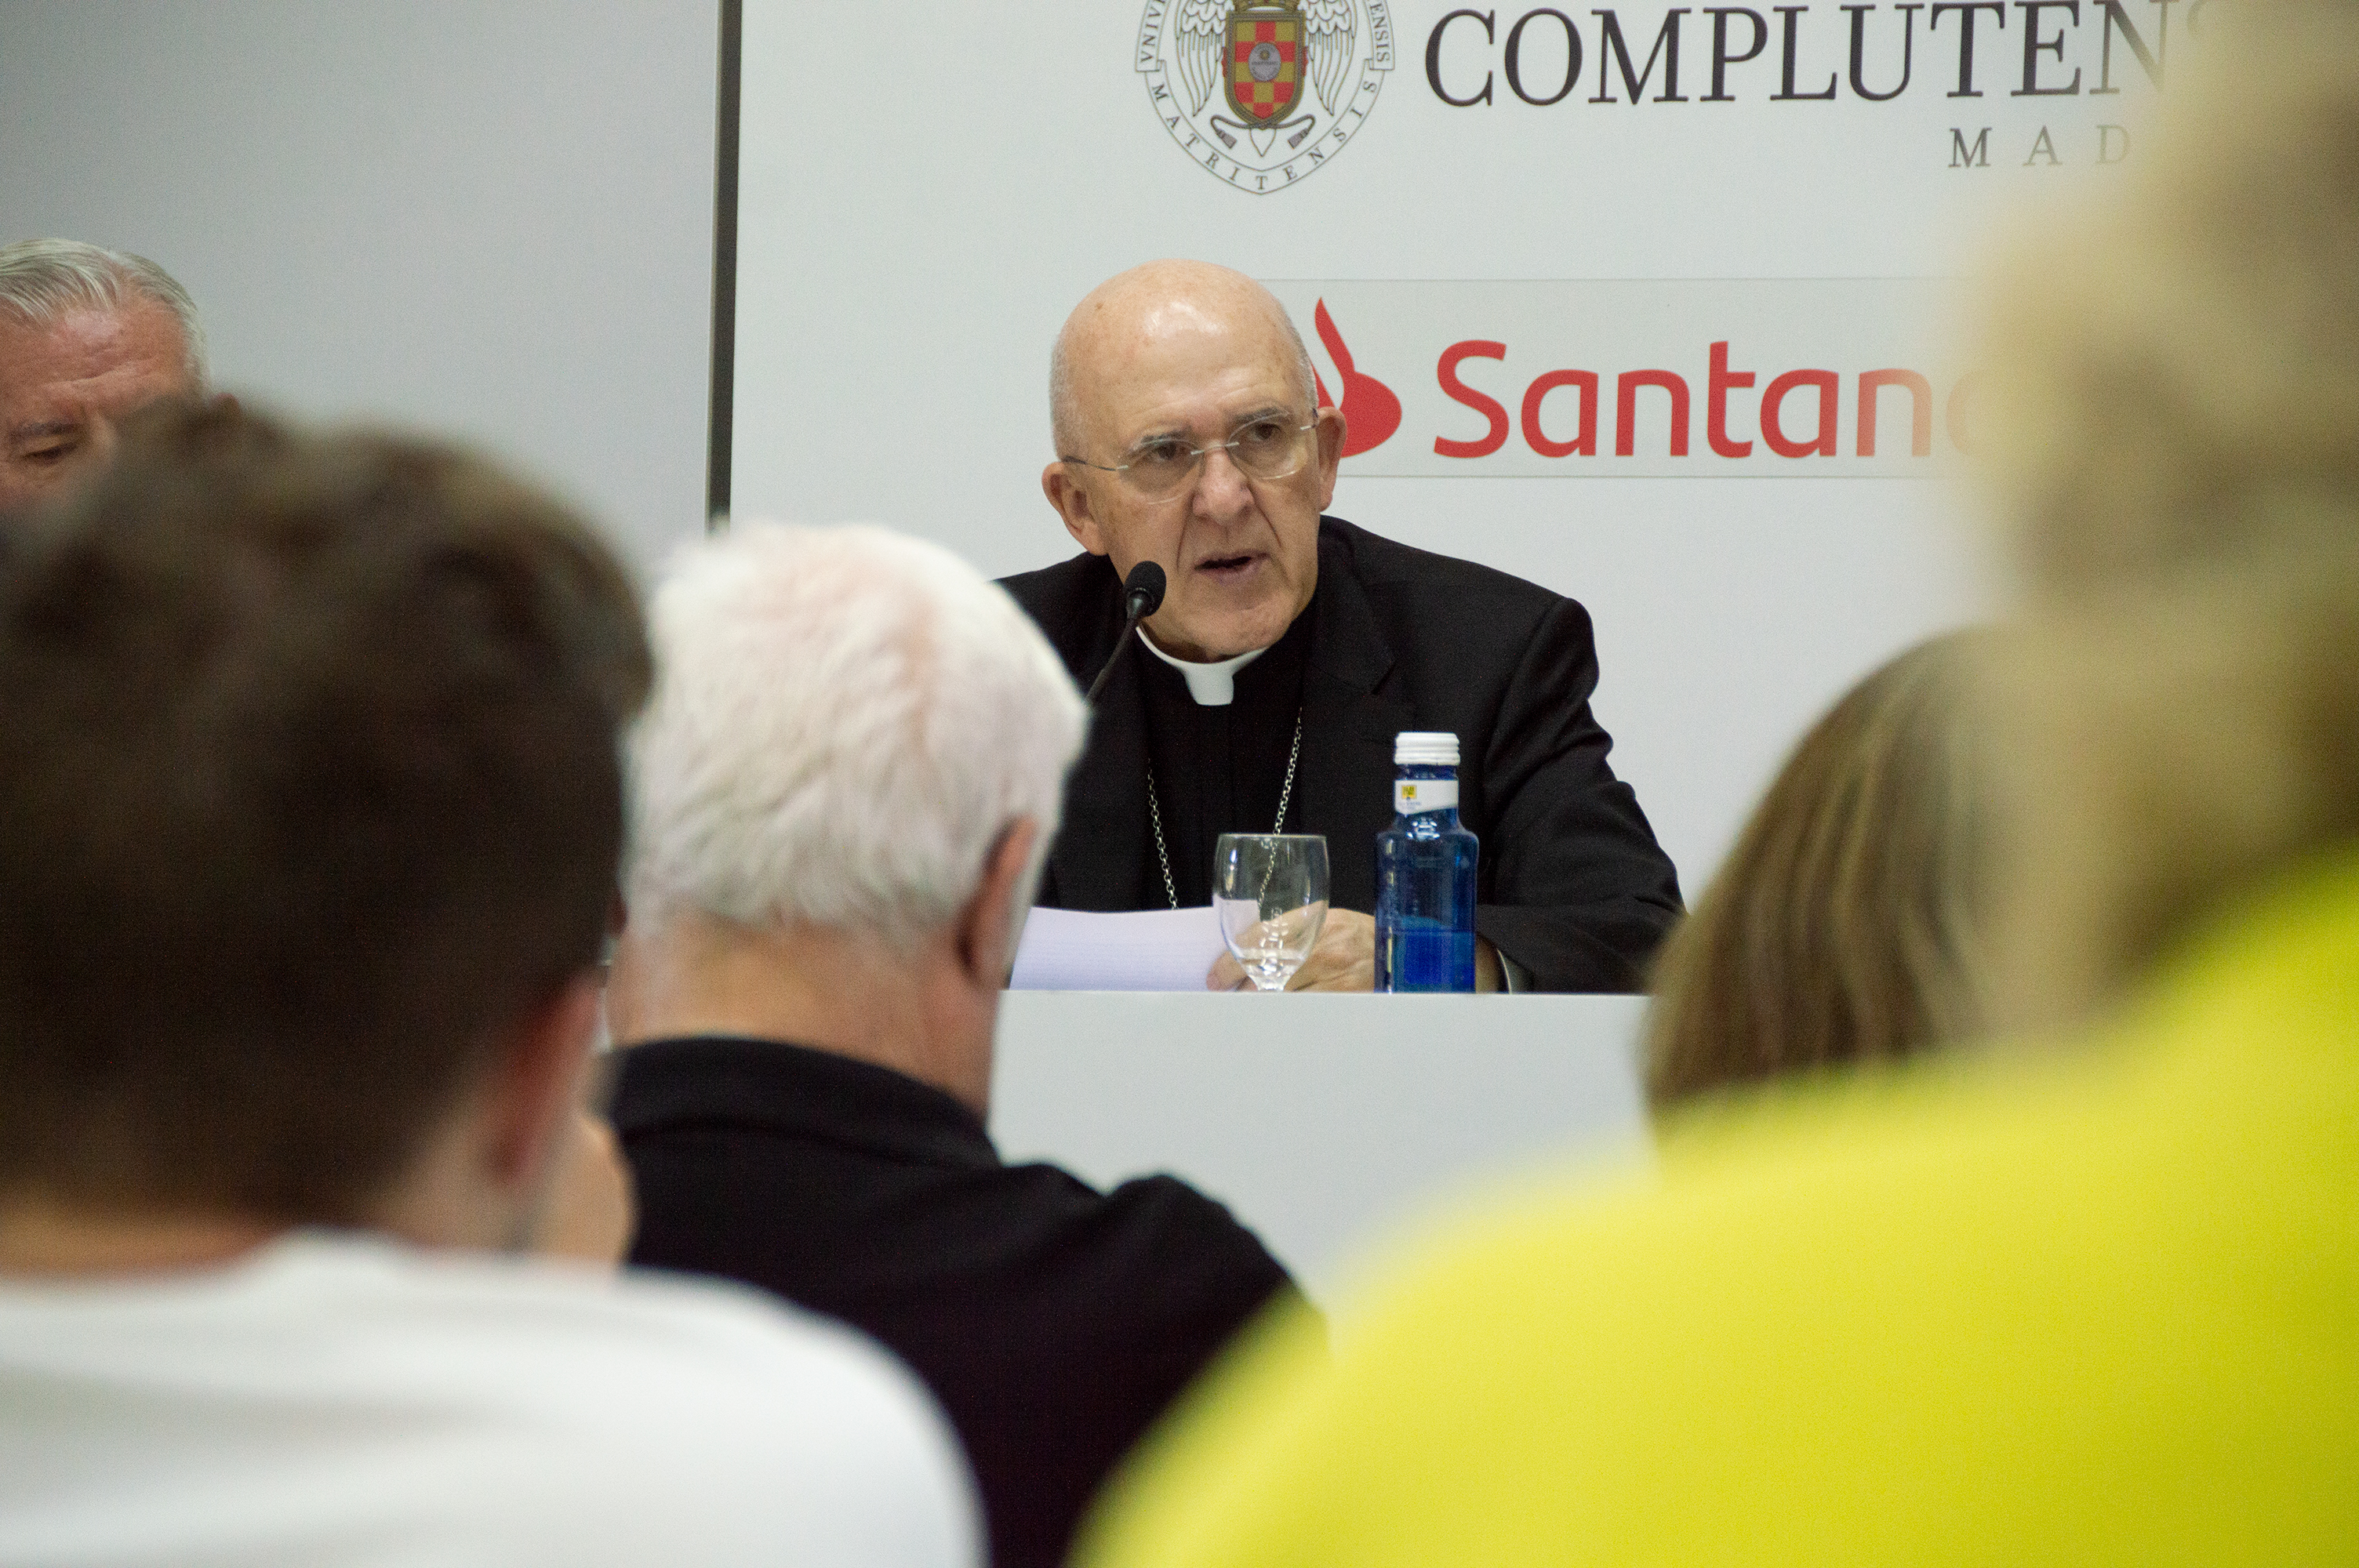 El arzobispo de Madrid, durante su intervención